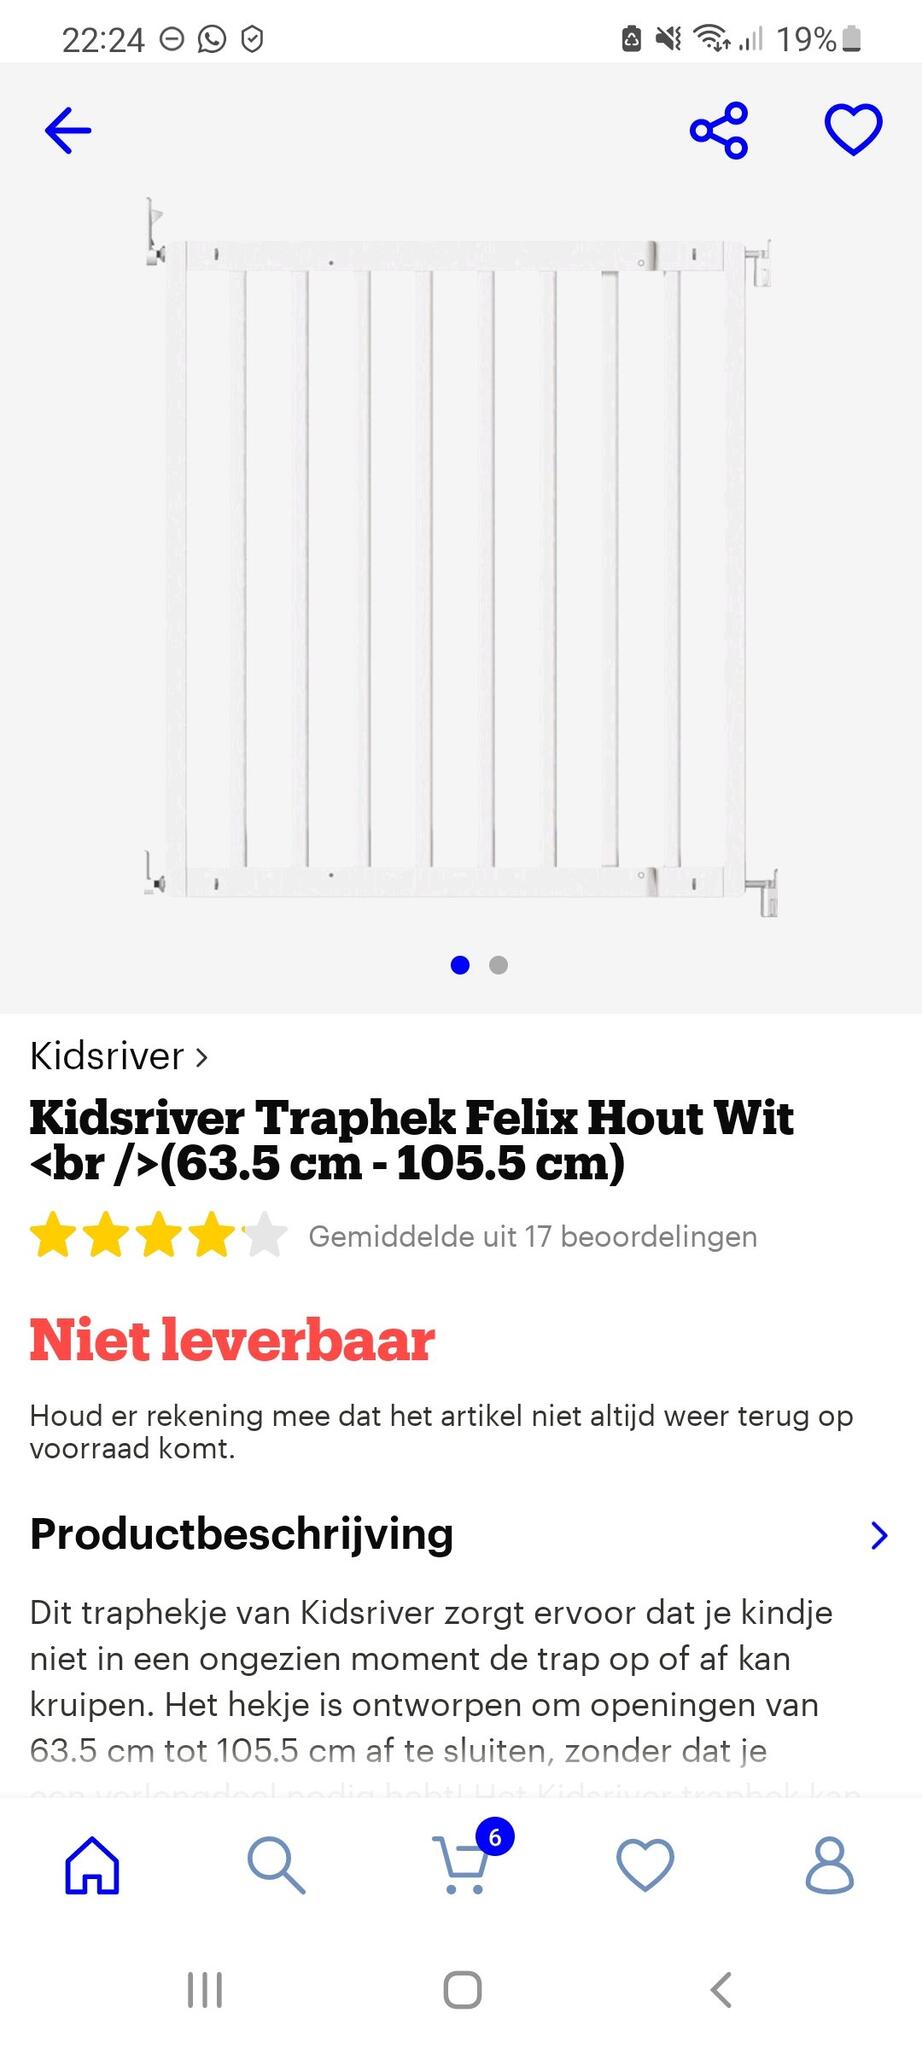 Kidsriver Felix Traphekje Voor 17 € In Heemstede, | Gratis/Te Koop — Nextdoor